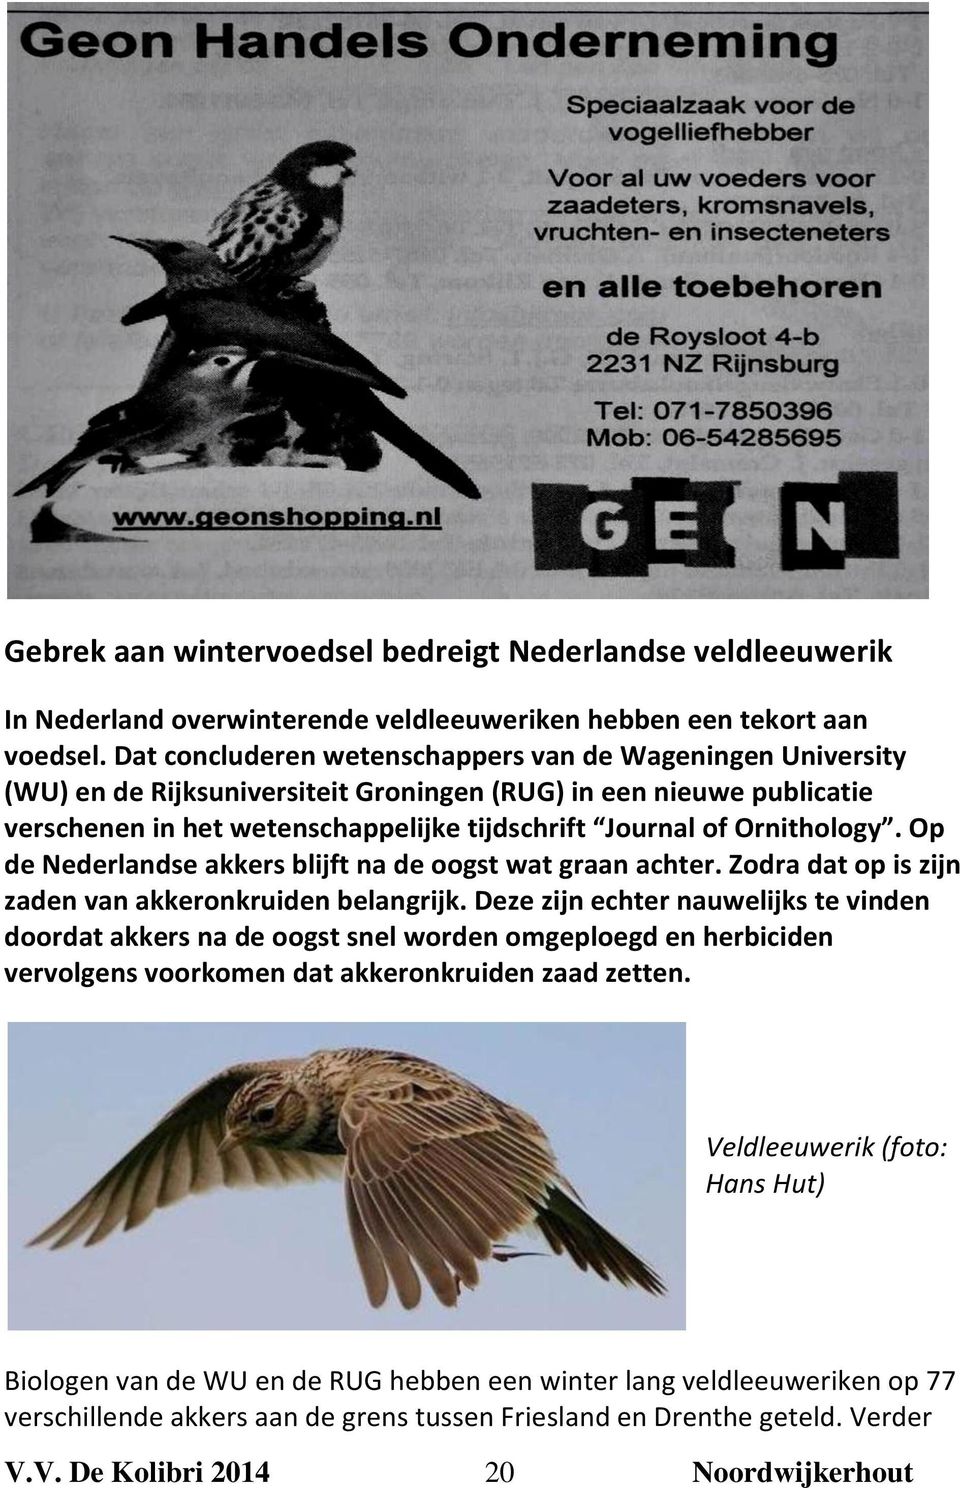 Ornithology. Op de Nederlandse akkers blijft na de oogst wat graan achter. Zodra dat op is zijn zaden van akkeronkruiden belangrijk.